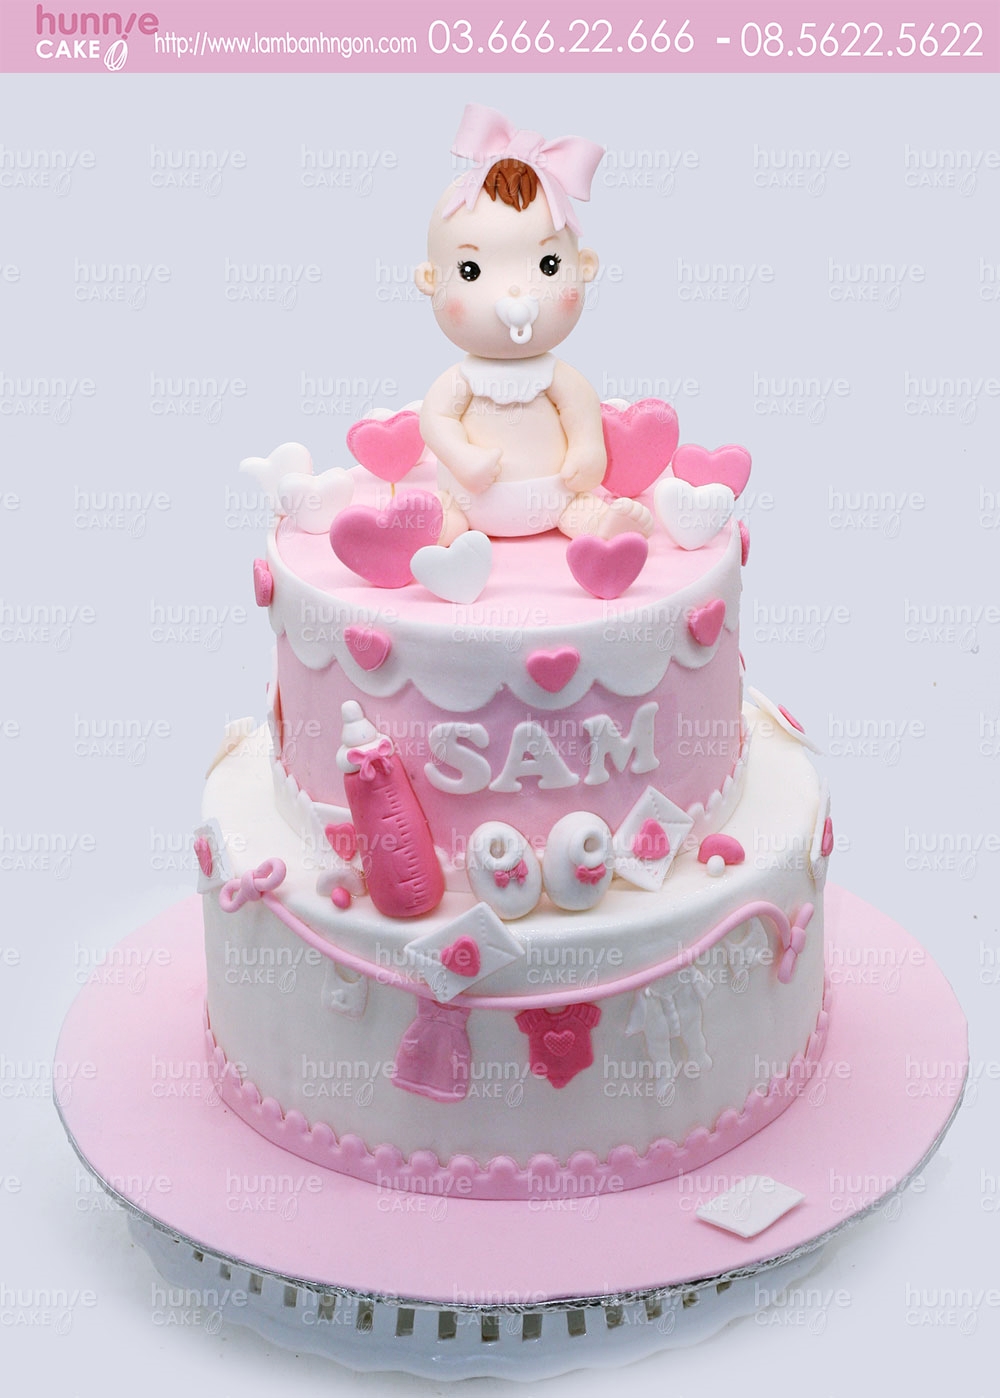 Bánh gato sinh nhật 2 tầng với bé gái đáng yêu 1 tuổi có biệt danh Trà ý  nghĩa va thích chơi thỏ bông 5114 - Bánh fondant